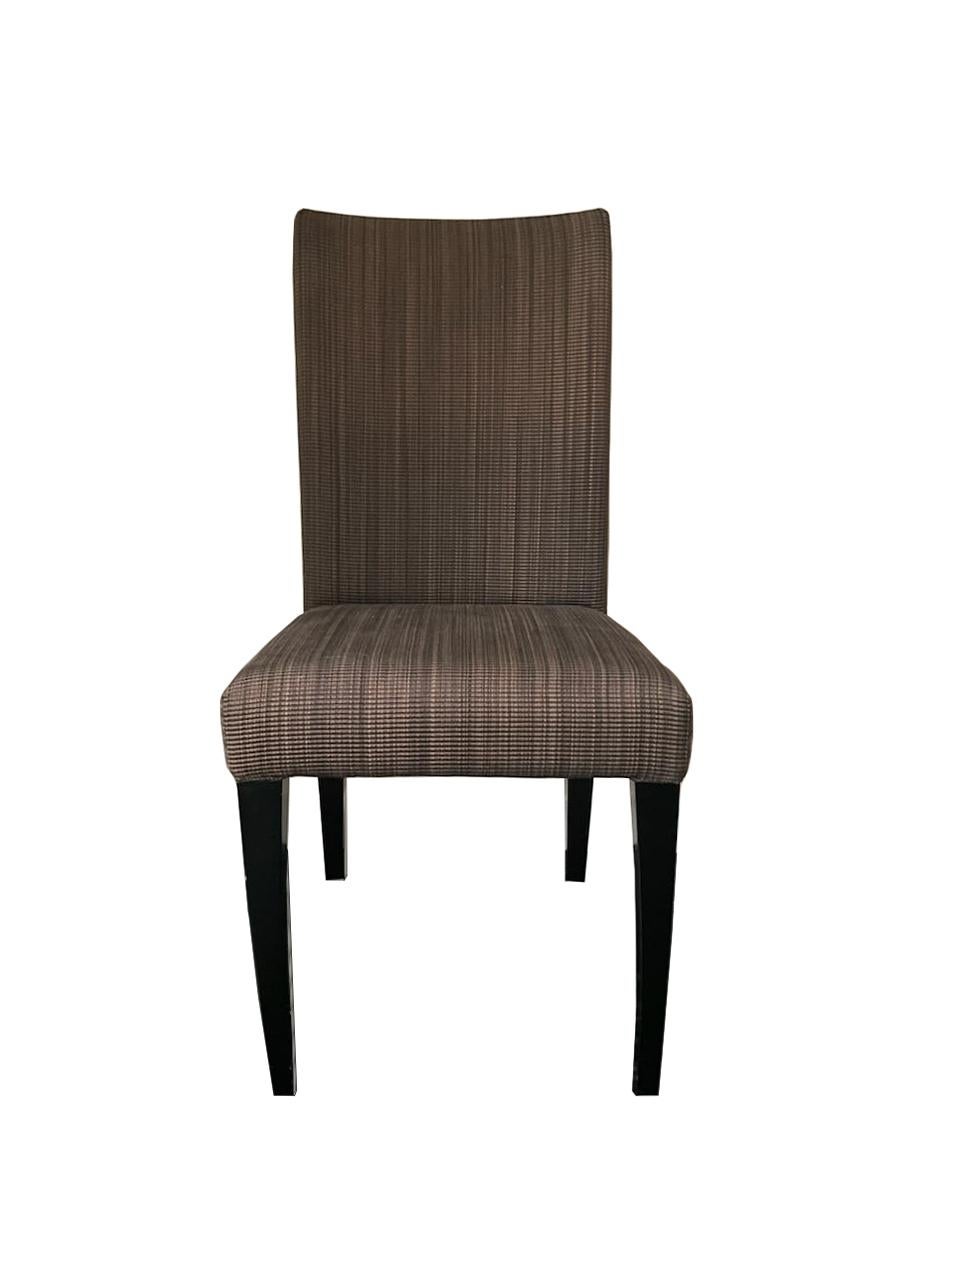 i4 Mariani für Pace Collection'S
Satz von 6 Beistellstühlen

Made in Italy von i4 Mariani, geradlinige Tweed-Fertigung in mehreren Schattierungen von warmem grau-taupefarbenem Stoff auf schwarzem, glänzendem Ebon-Holzgestell. Ein